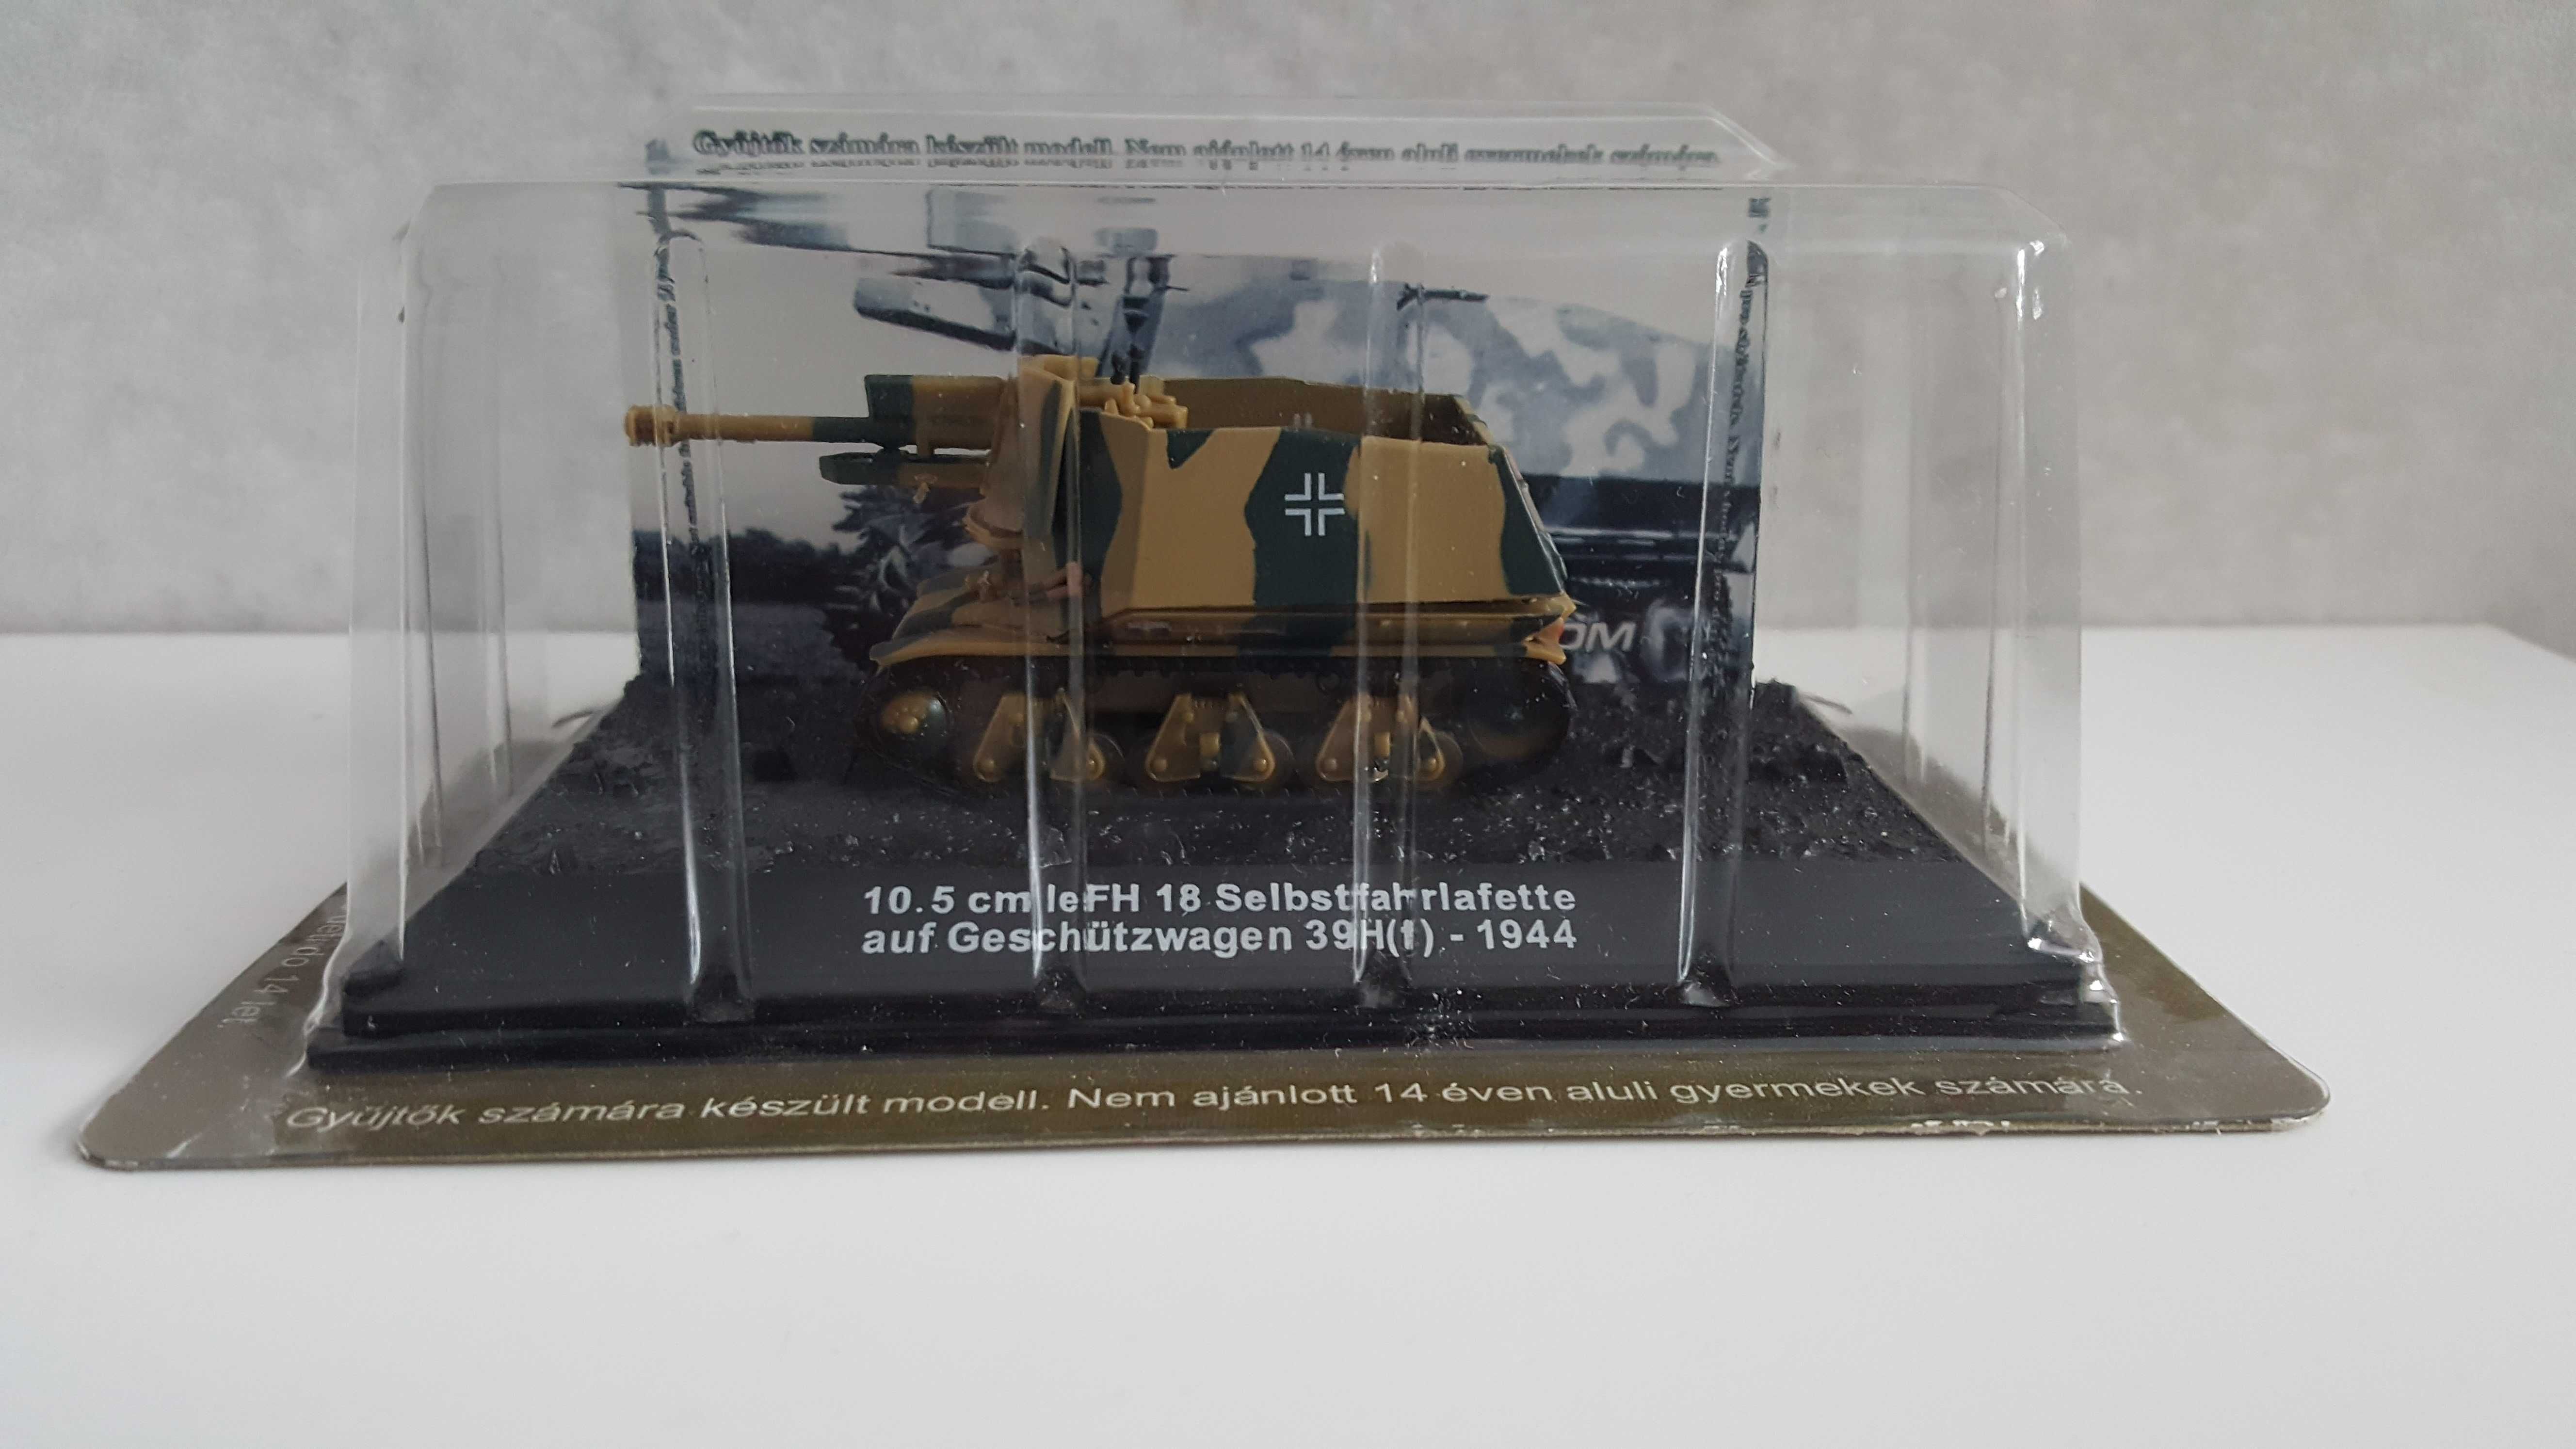 10,5 cm le FH18 Selbstfahrlafette auf Geschützwagen 39H(f) skala 1:72